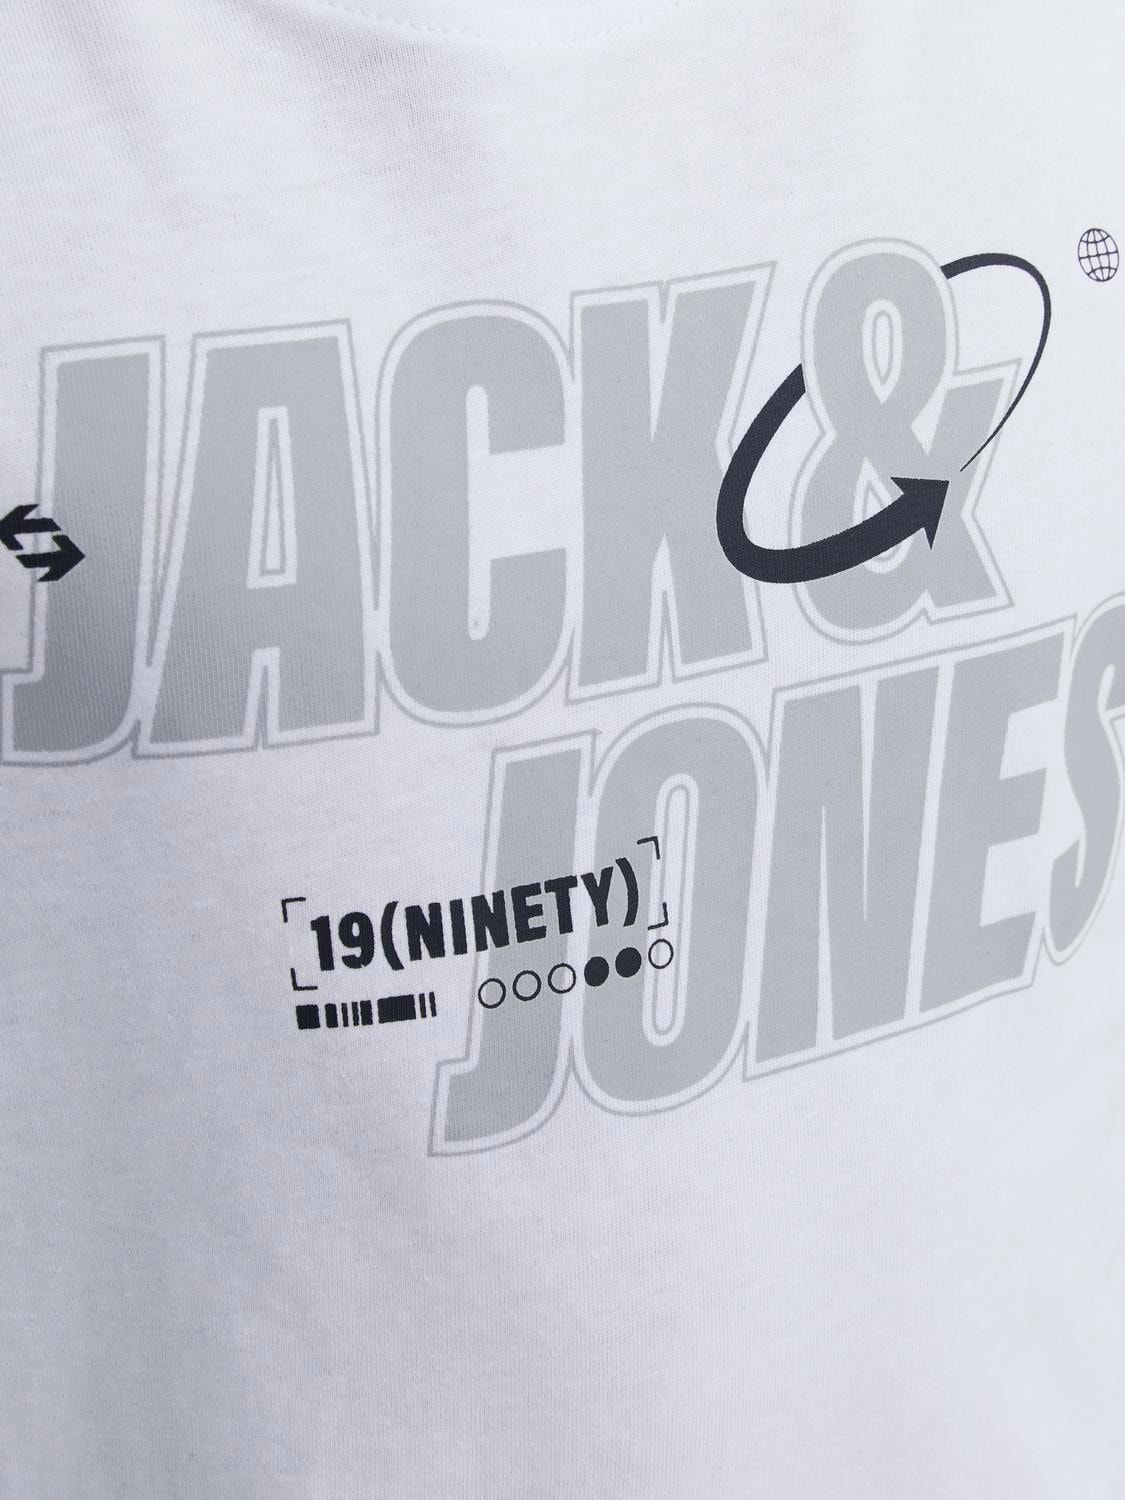 Jack & Jones Logo T-shirt Für jungs -White - 12247642